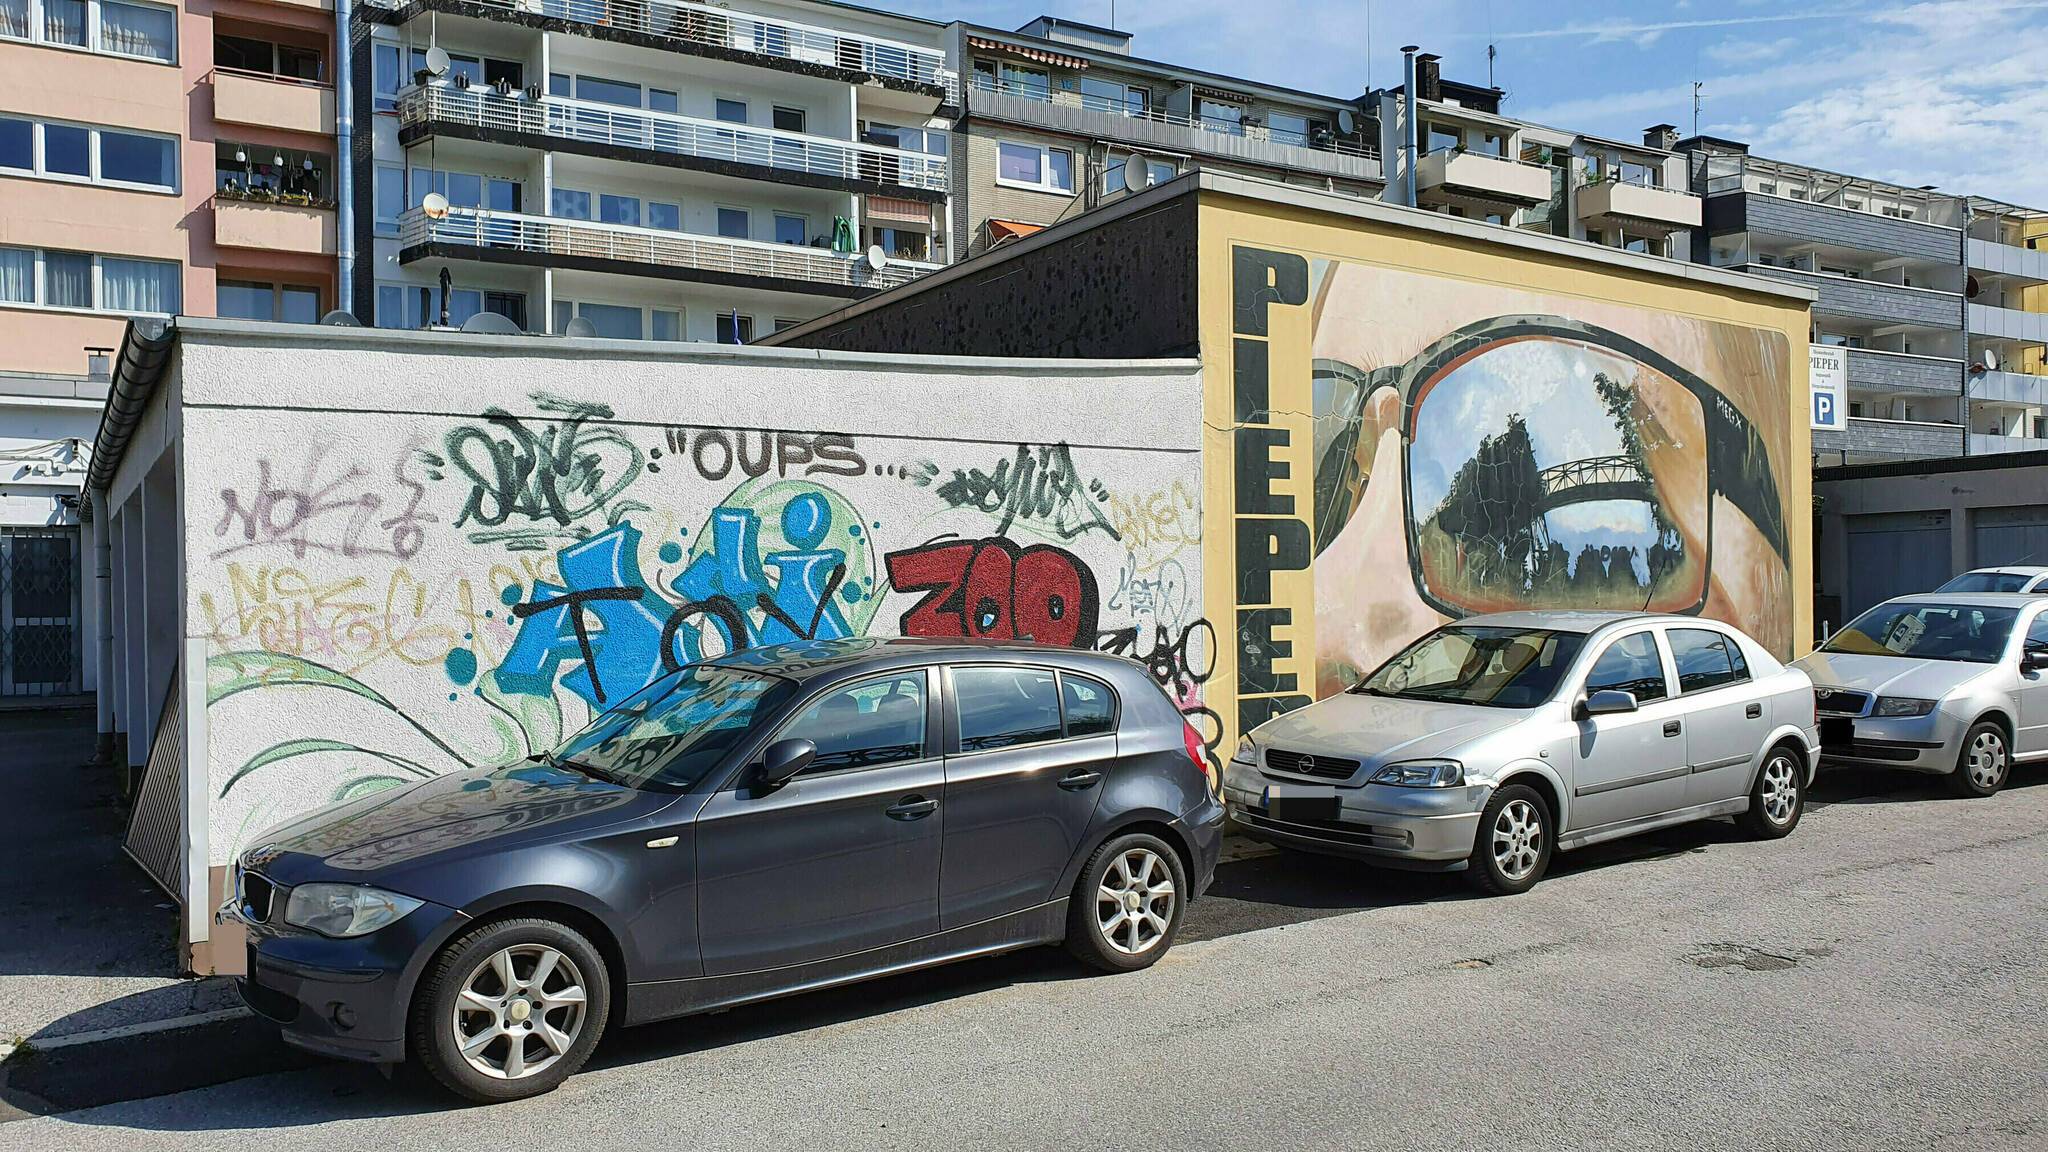  Das Wandbild von Martin Heuwold, vor 12 Jahren als private Initiative des Optikers Axel Pieper entstanden, bleibt erhalten und wird vom Künstler aufgefrischt. Der Betrachtende mit der Sonnenbrille, in der sich die Schwebebahn spiegelt, soll nun Gesellschaft von anderen Fassaden in gleich hoher künstlerischer Qualität bekommen. 